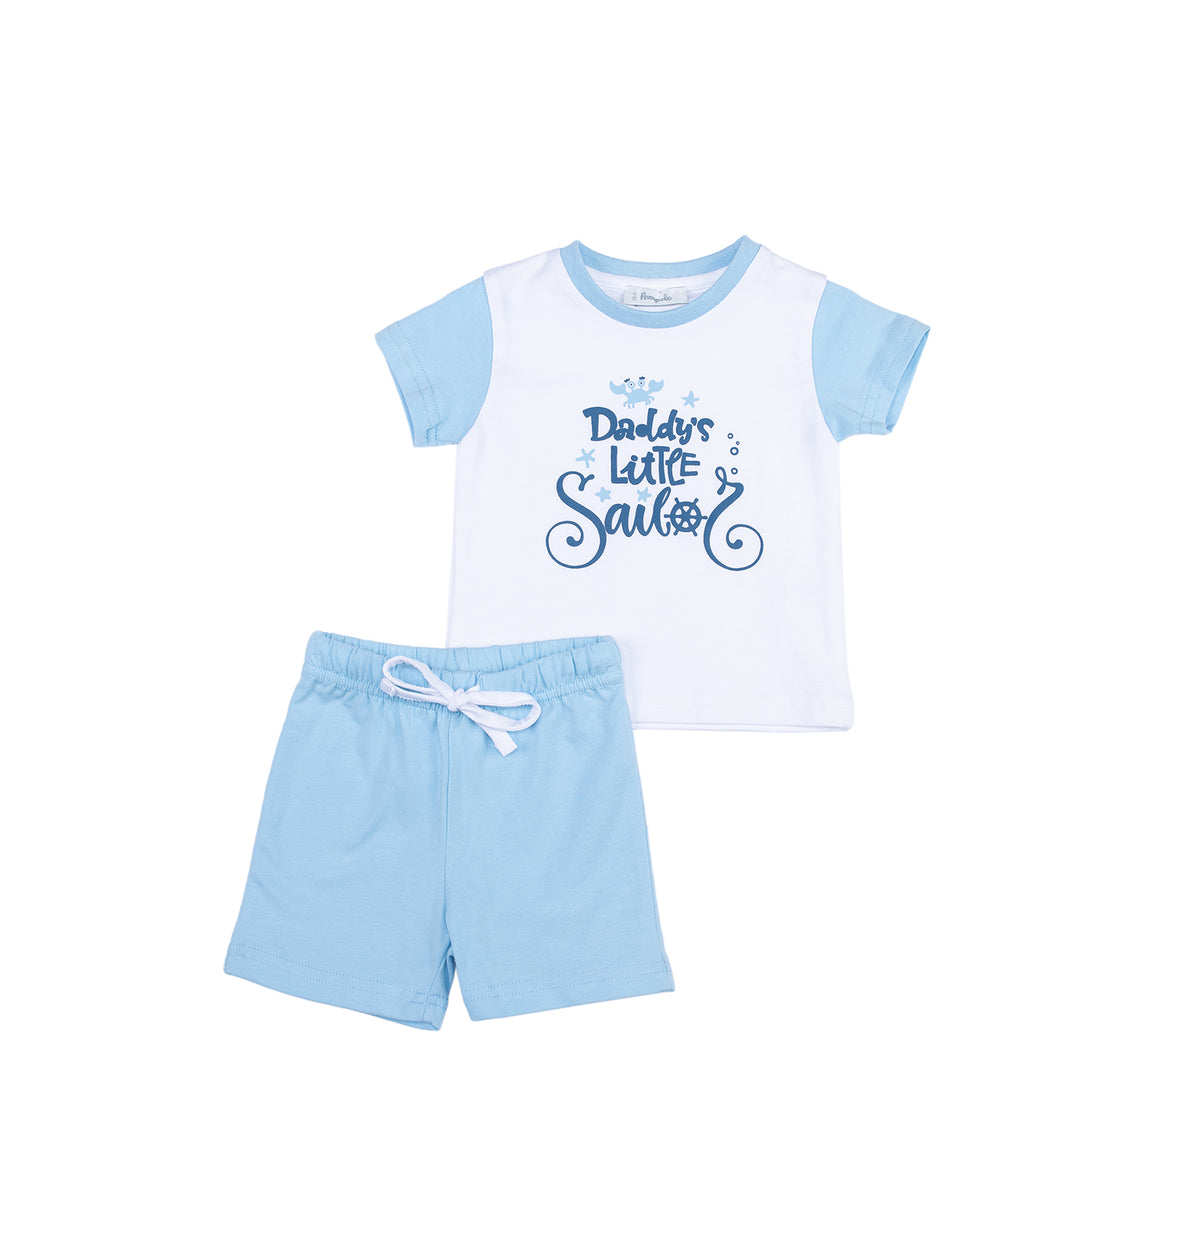 Soft cotton Babyboy pyjama by Pompelo